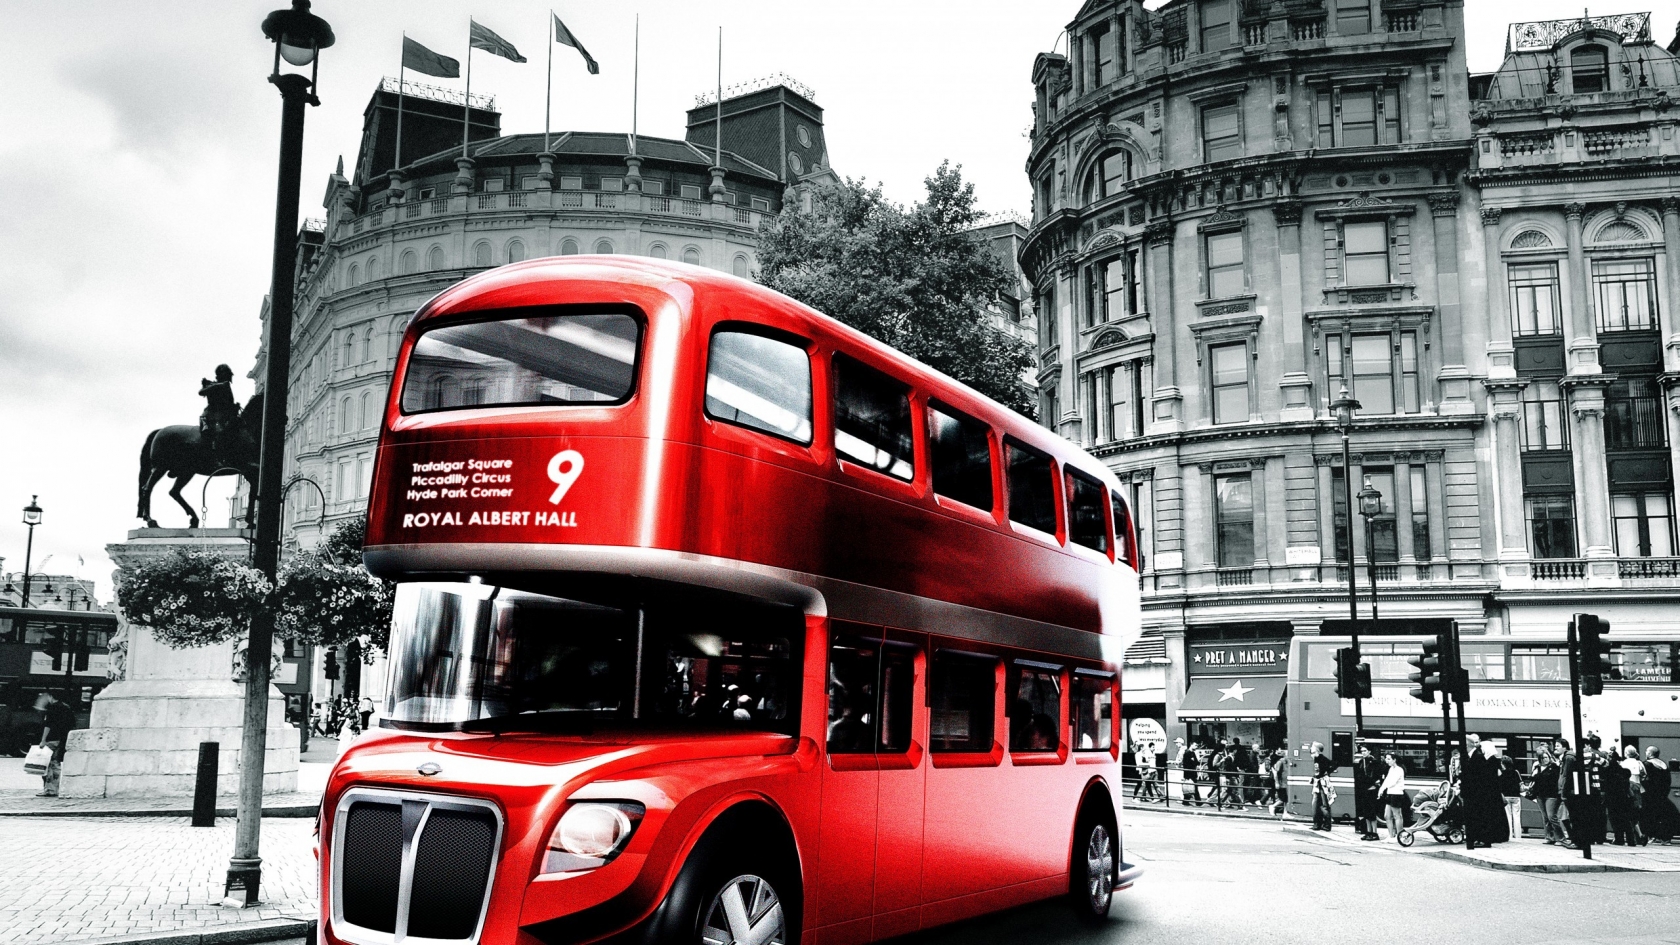 London Bus Design for 1680 x 945 HDTV resolution